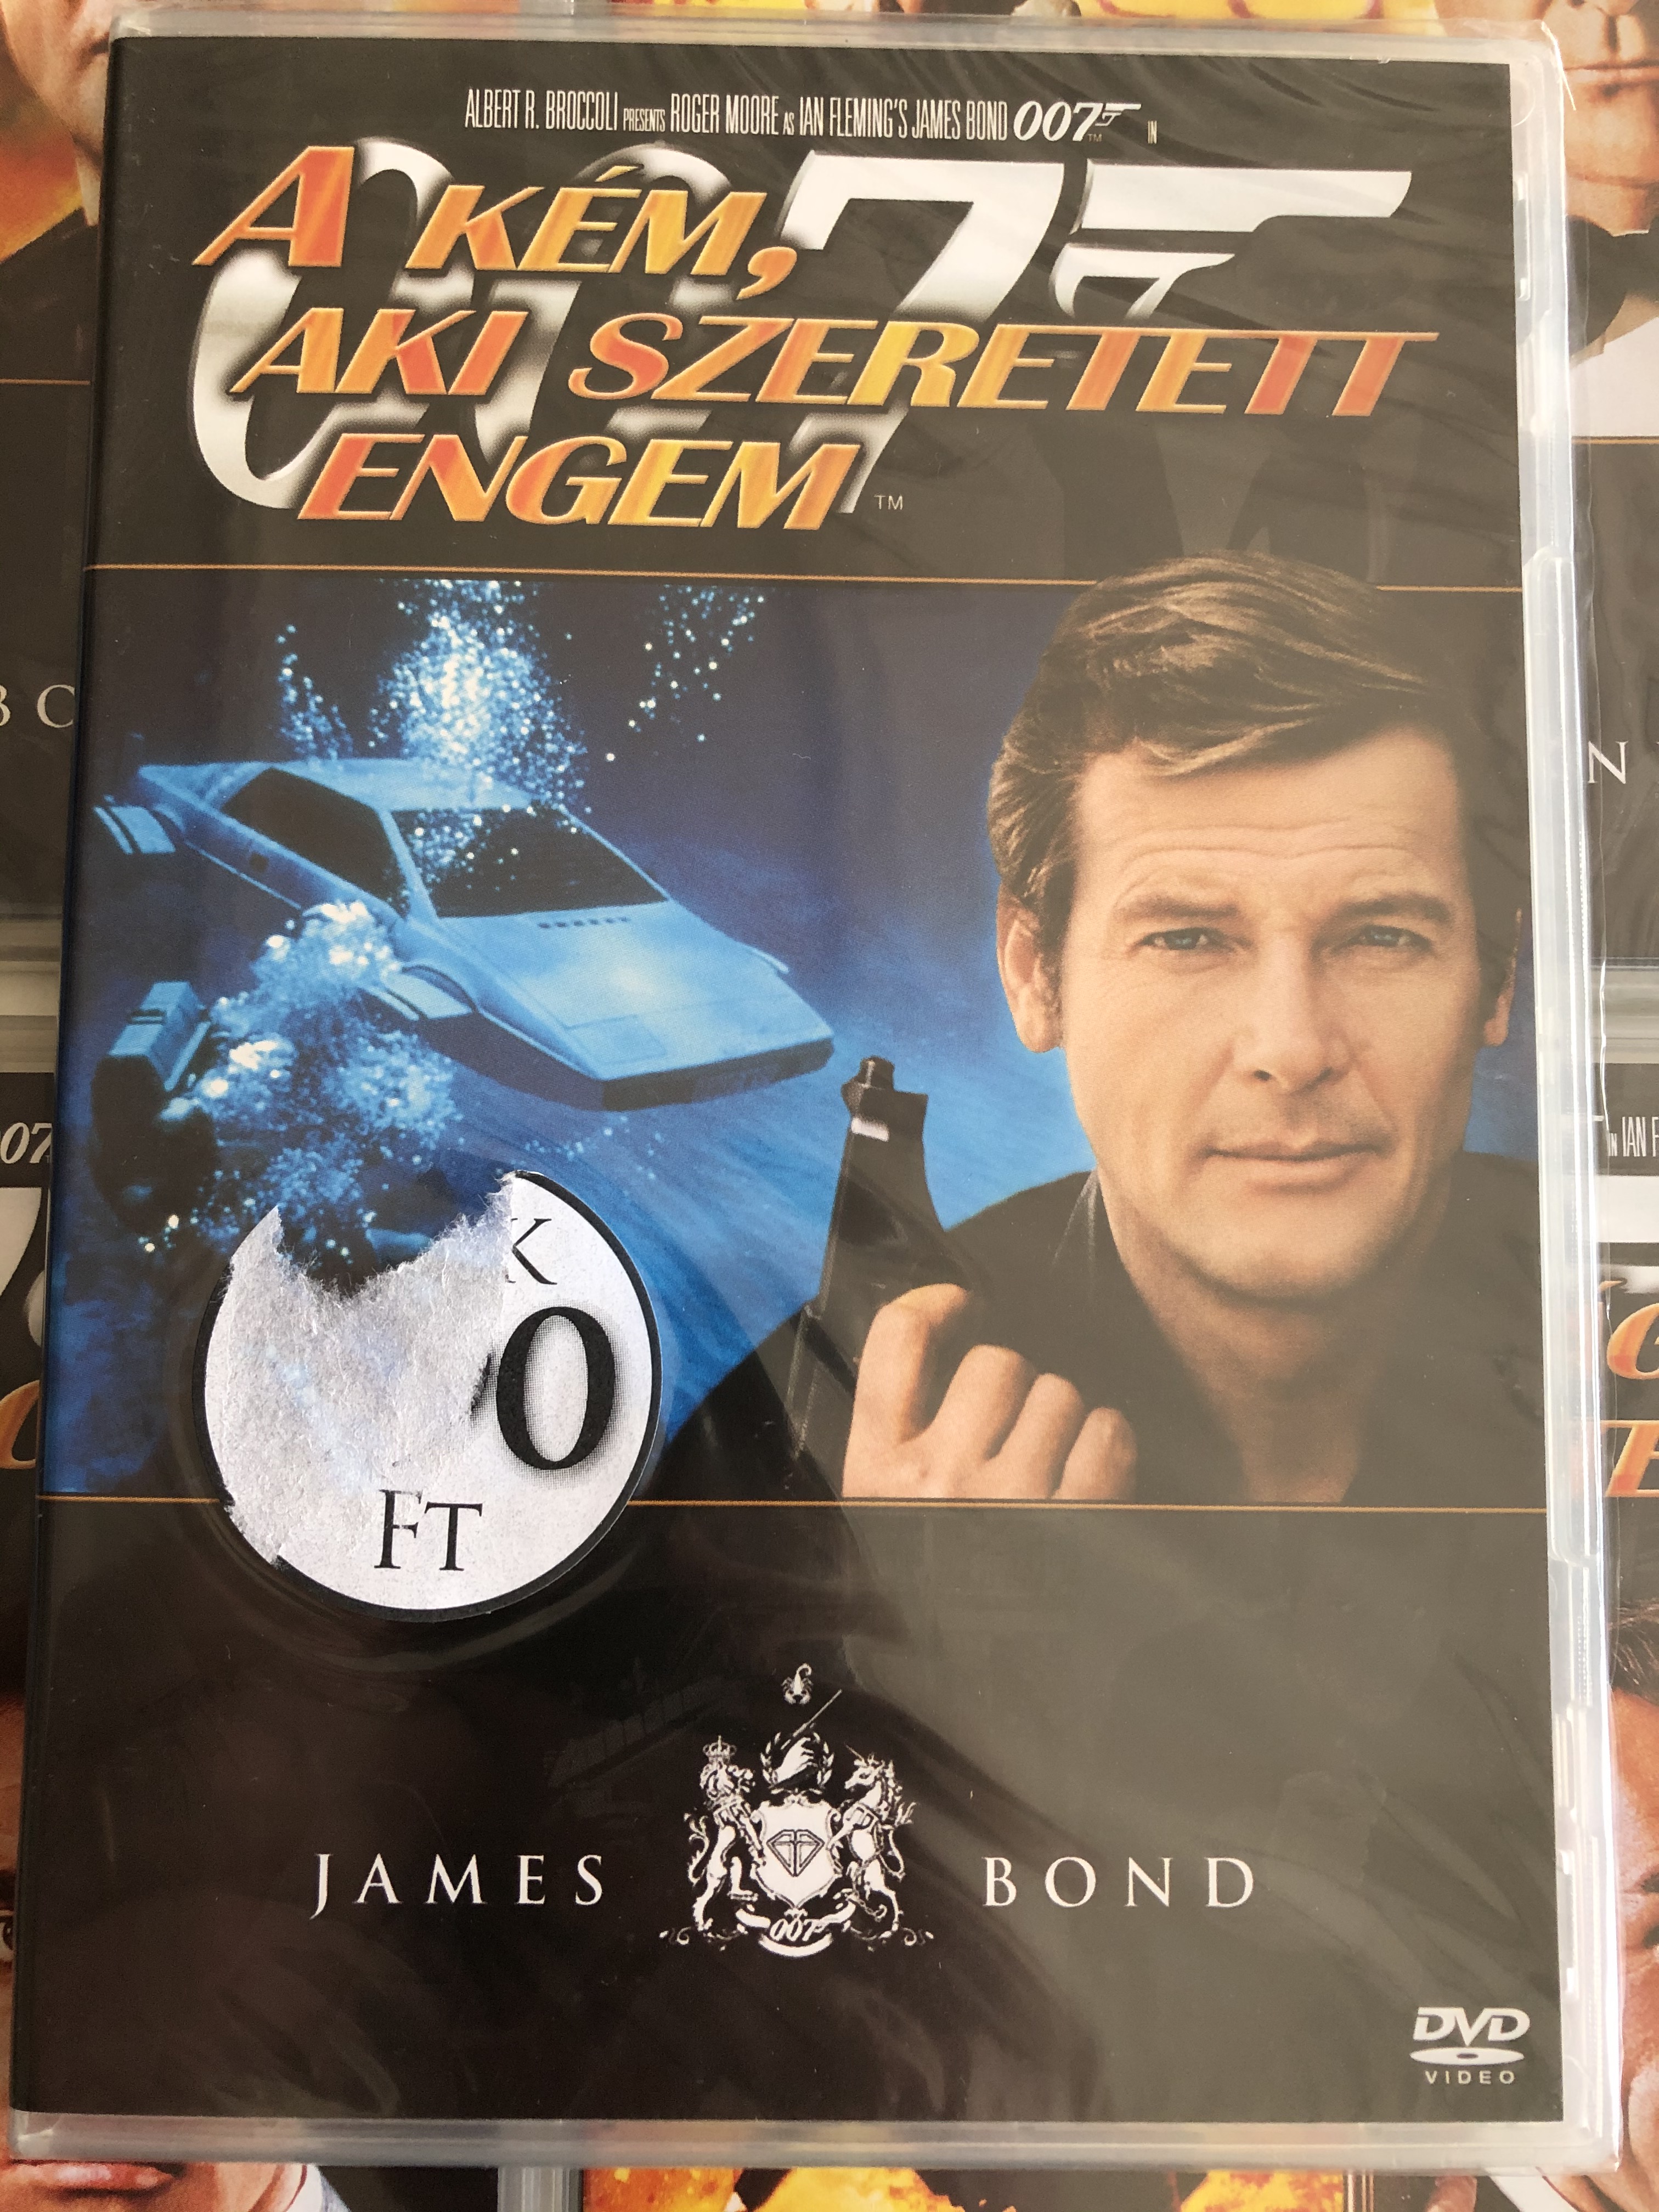 James Bond 007 - The Spy who loved me DVD 1977 James Bond - A kém aki szeretett engem 1.JPG